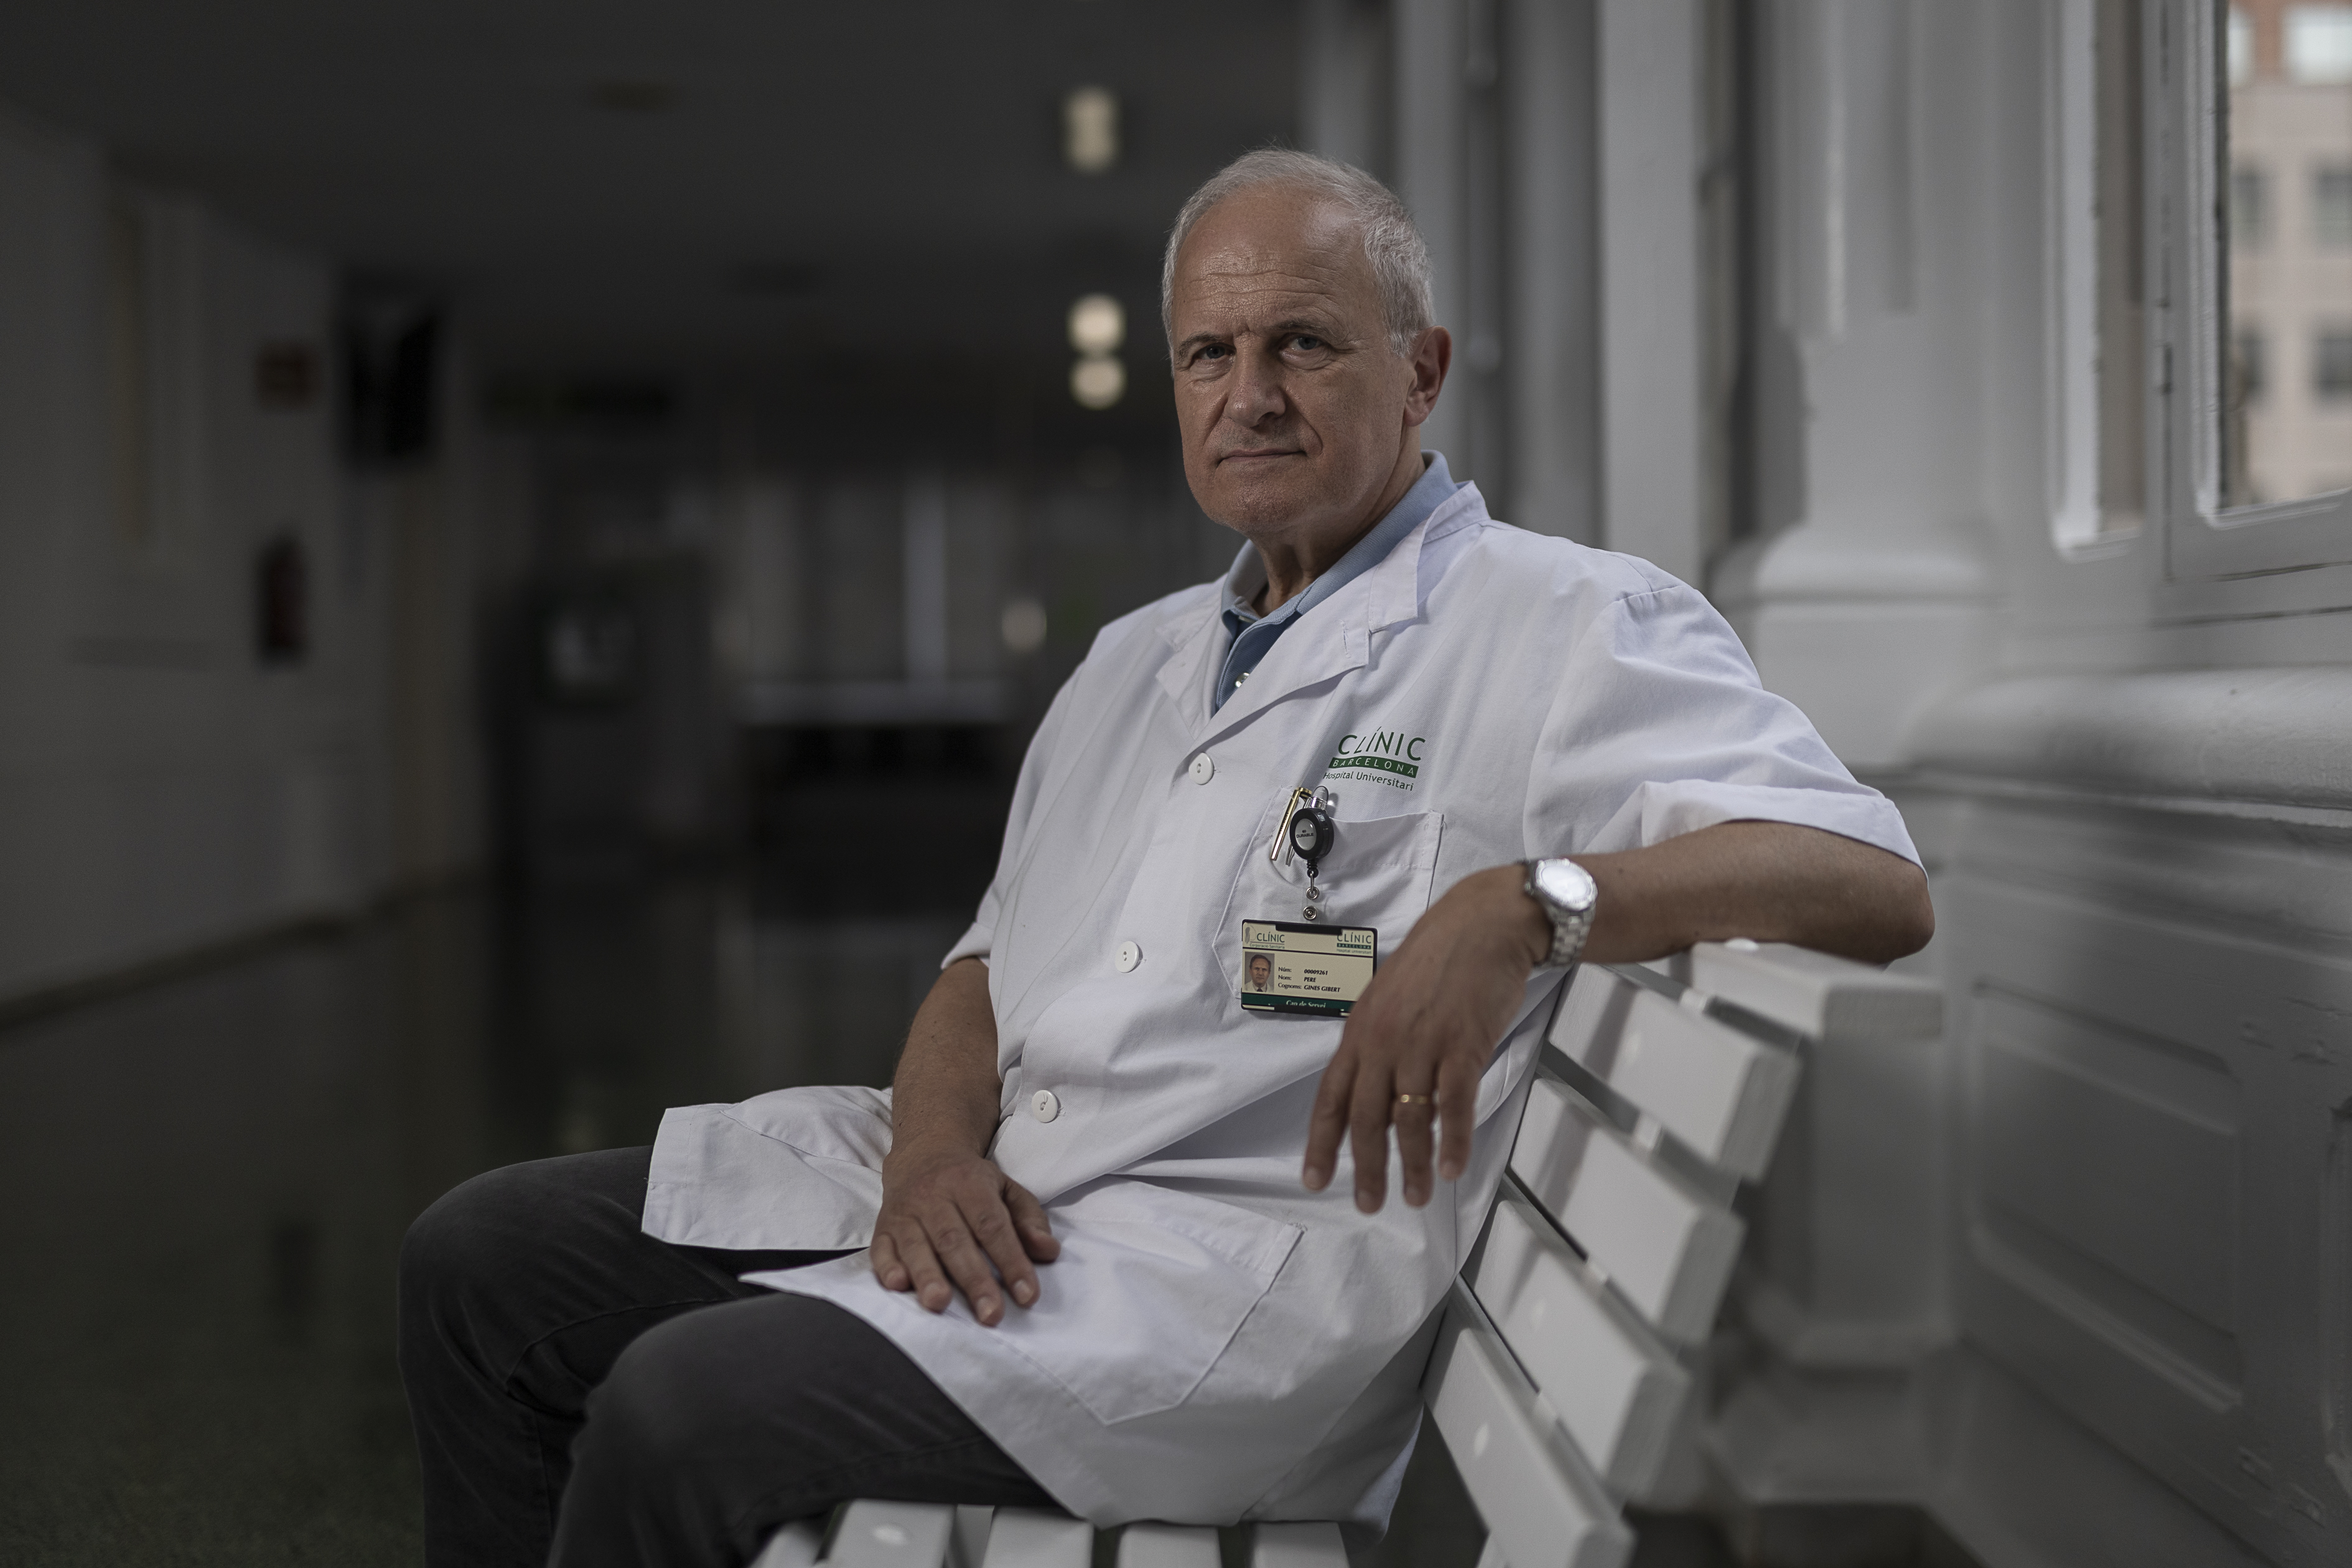 Pere Ginès, consultor del Servicio de Hepatología del Hospital Clinic y jefe del grupo de Enfermedades Hepáticas Crónicas del Idibaps.